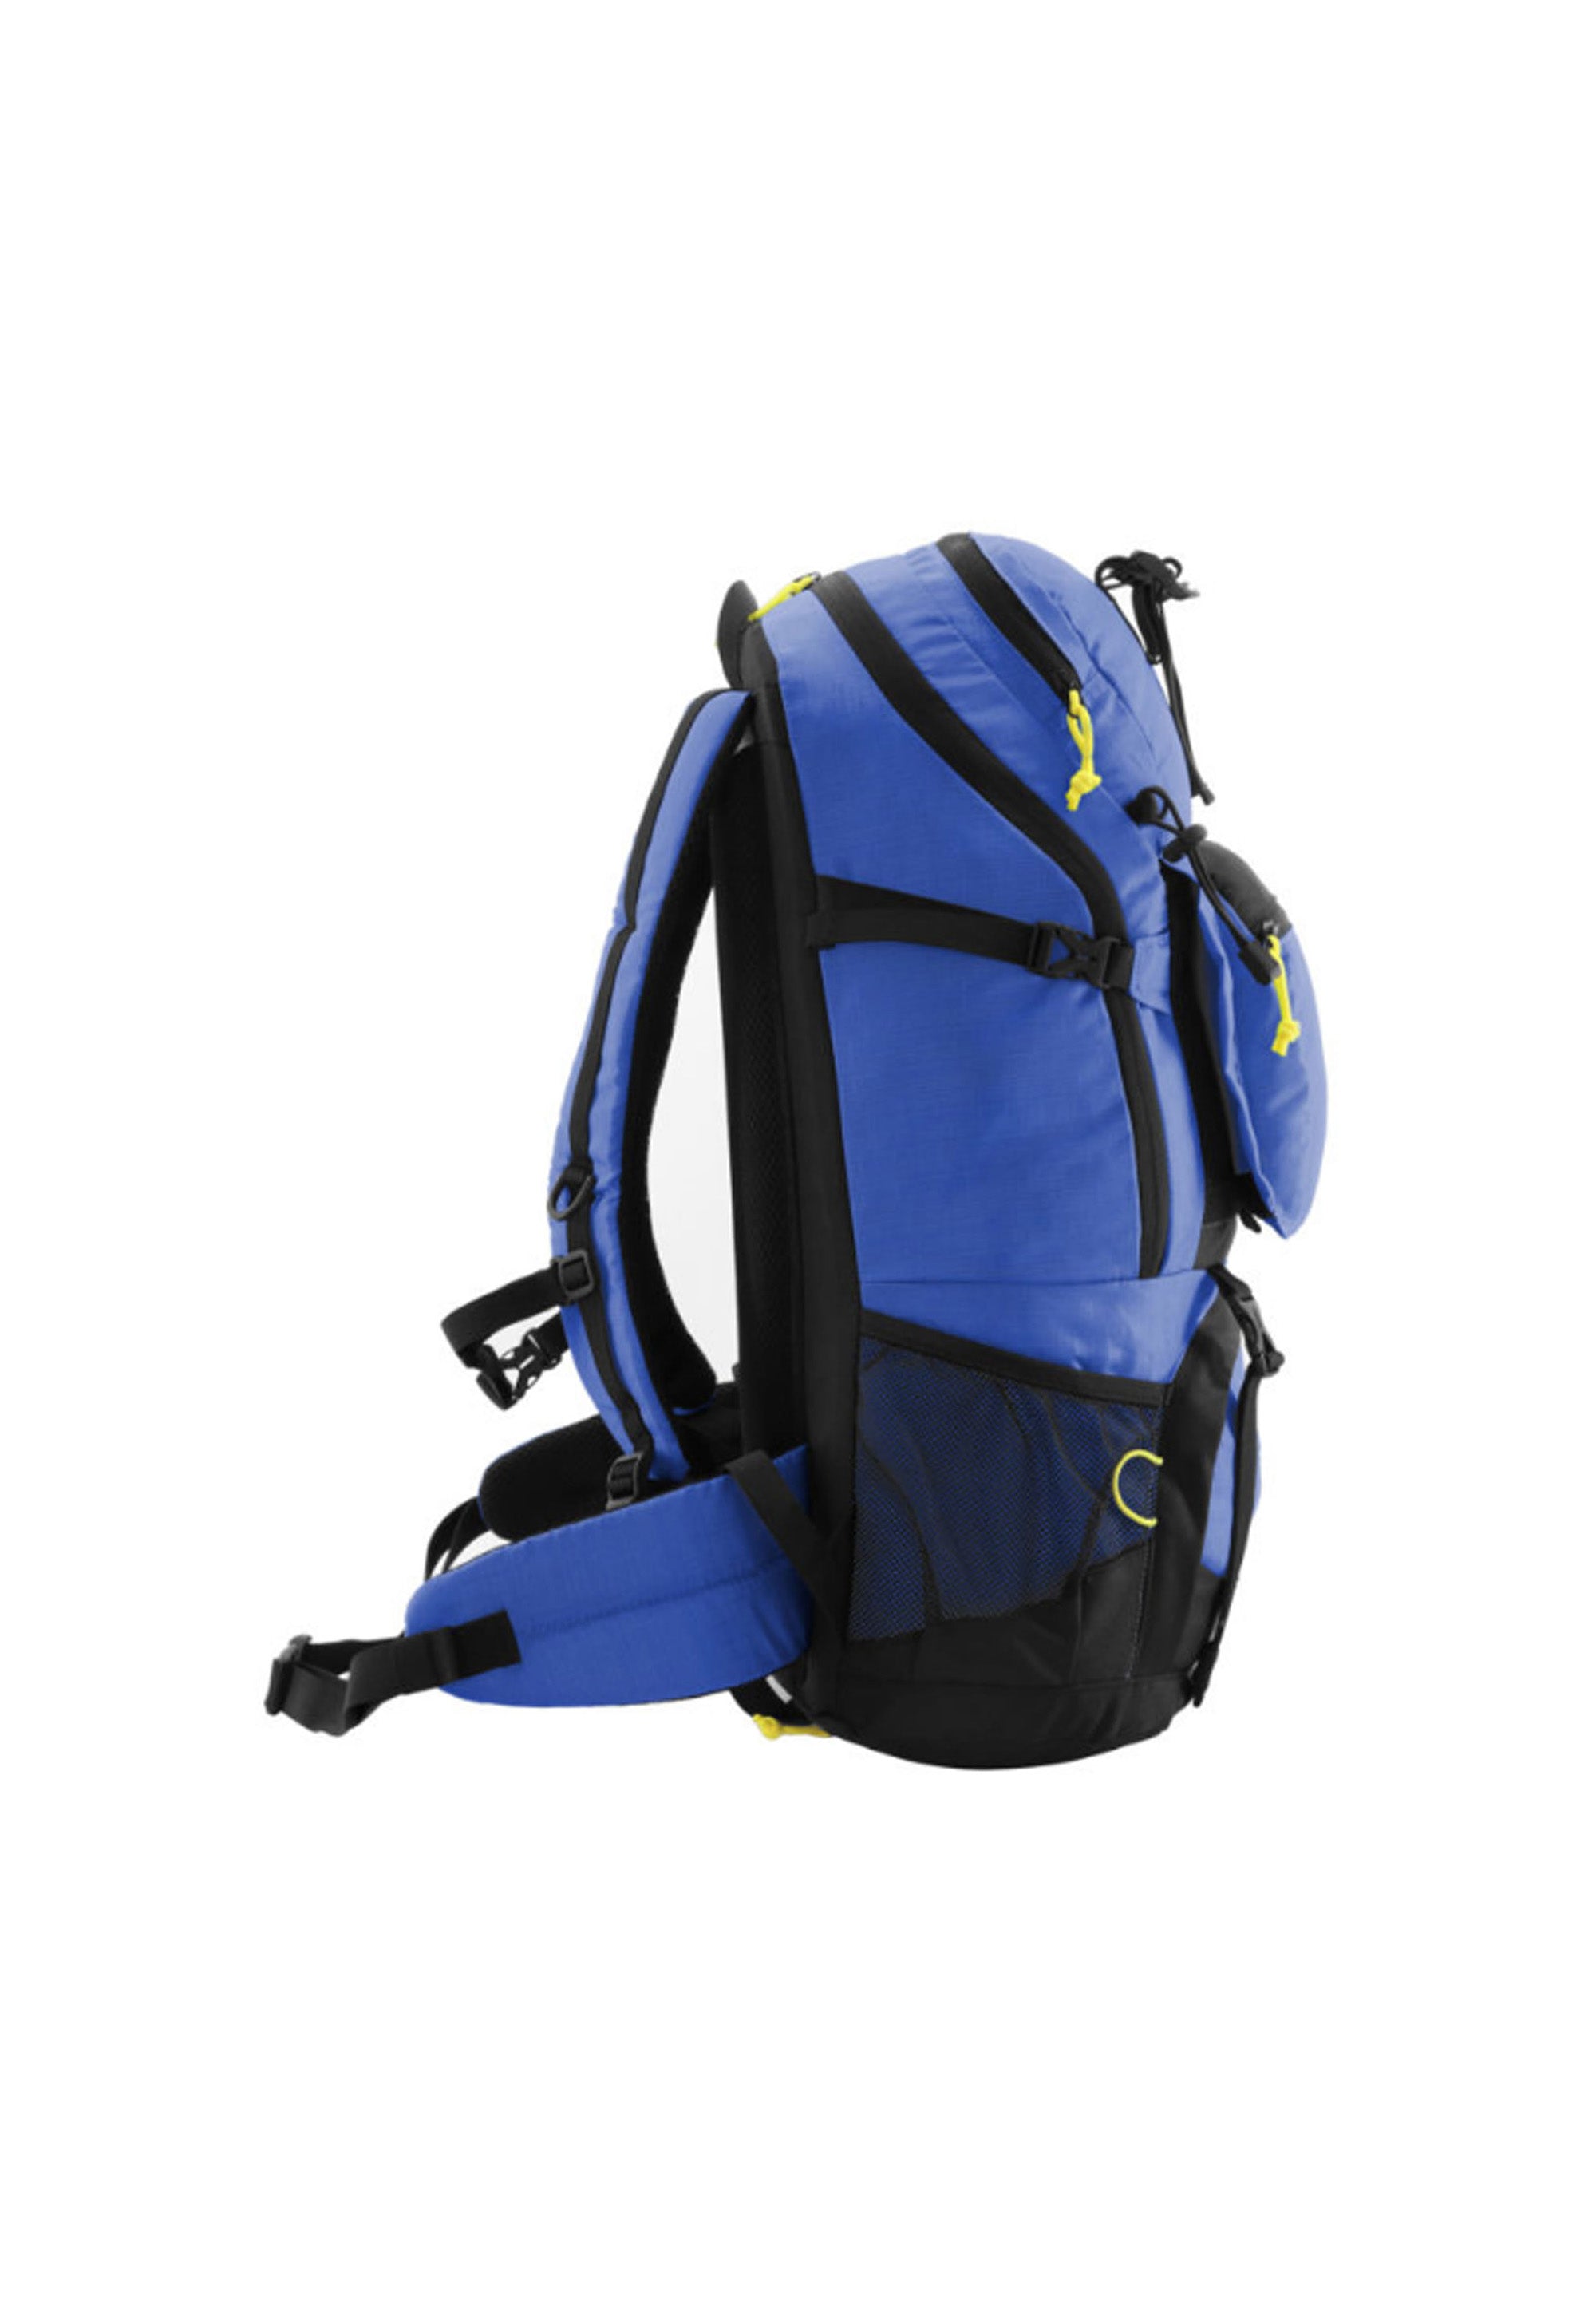 National Geographic - Destination | Outdoor Rucksack mit RFID-Blocker (60cm) | Blau